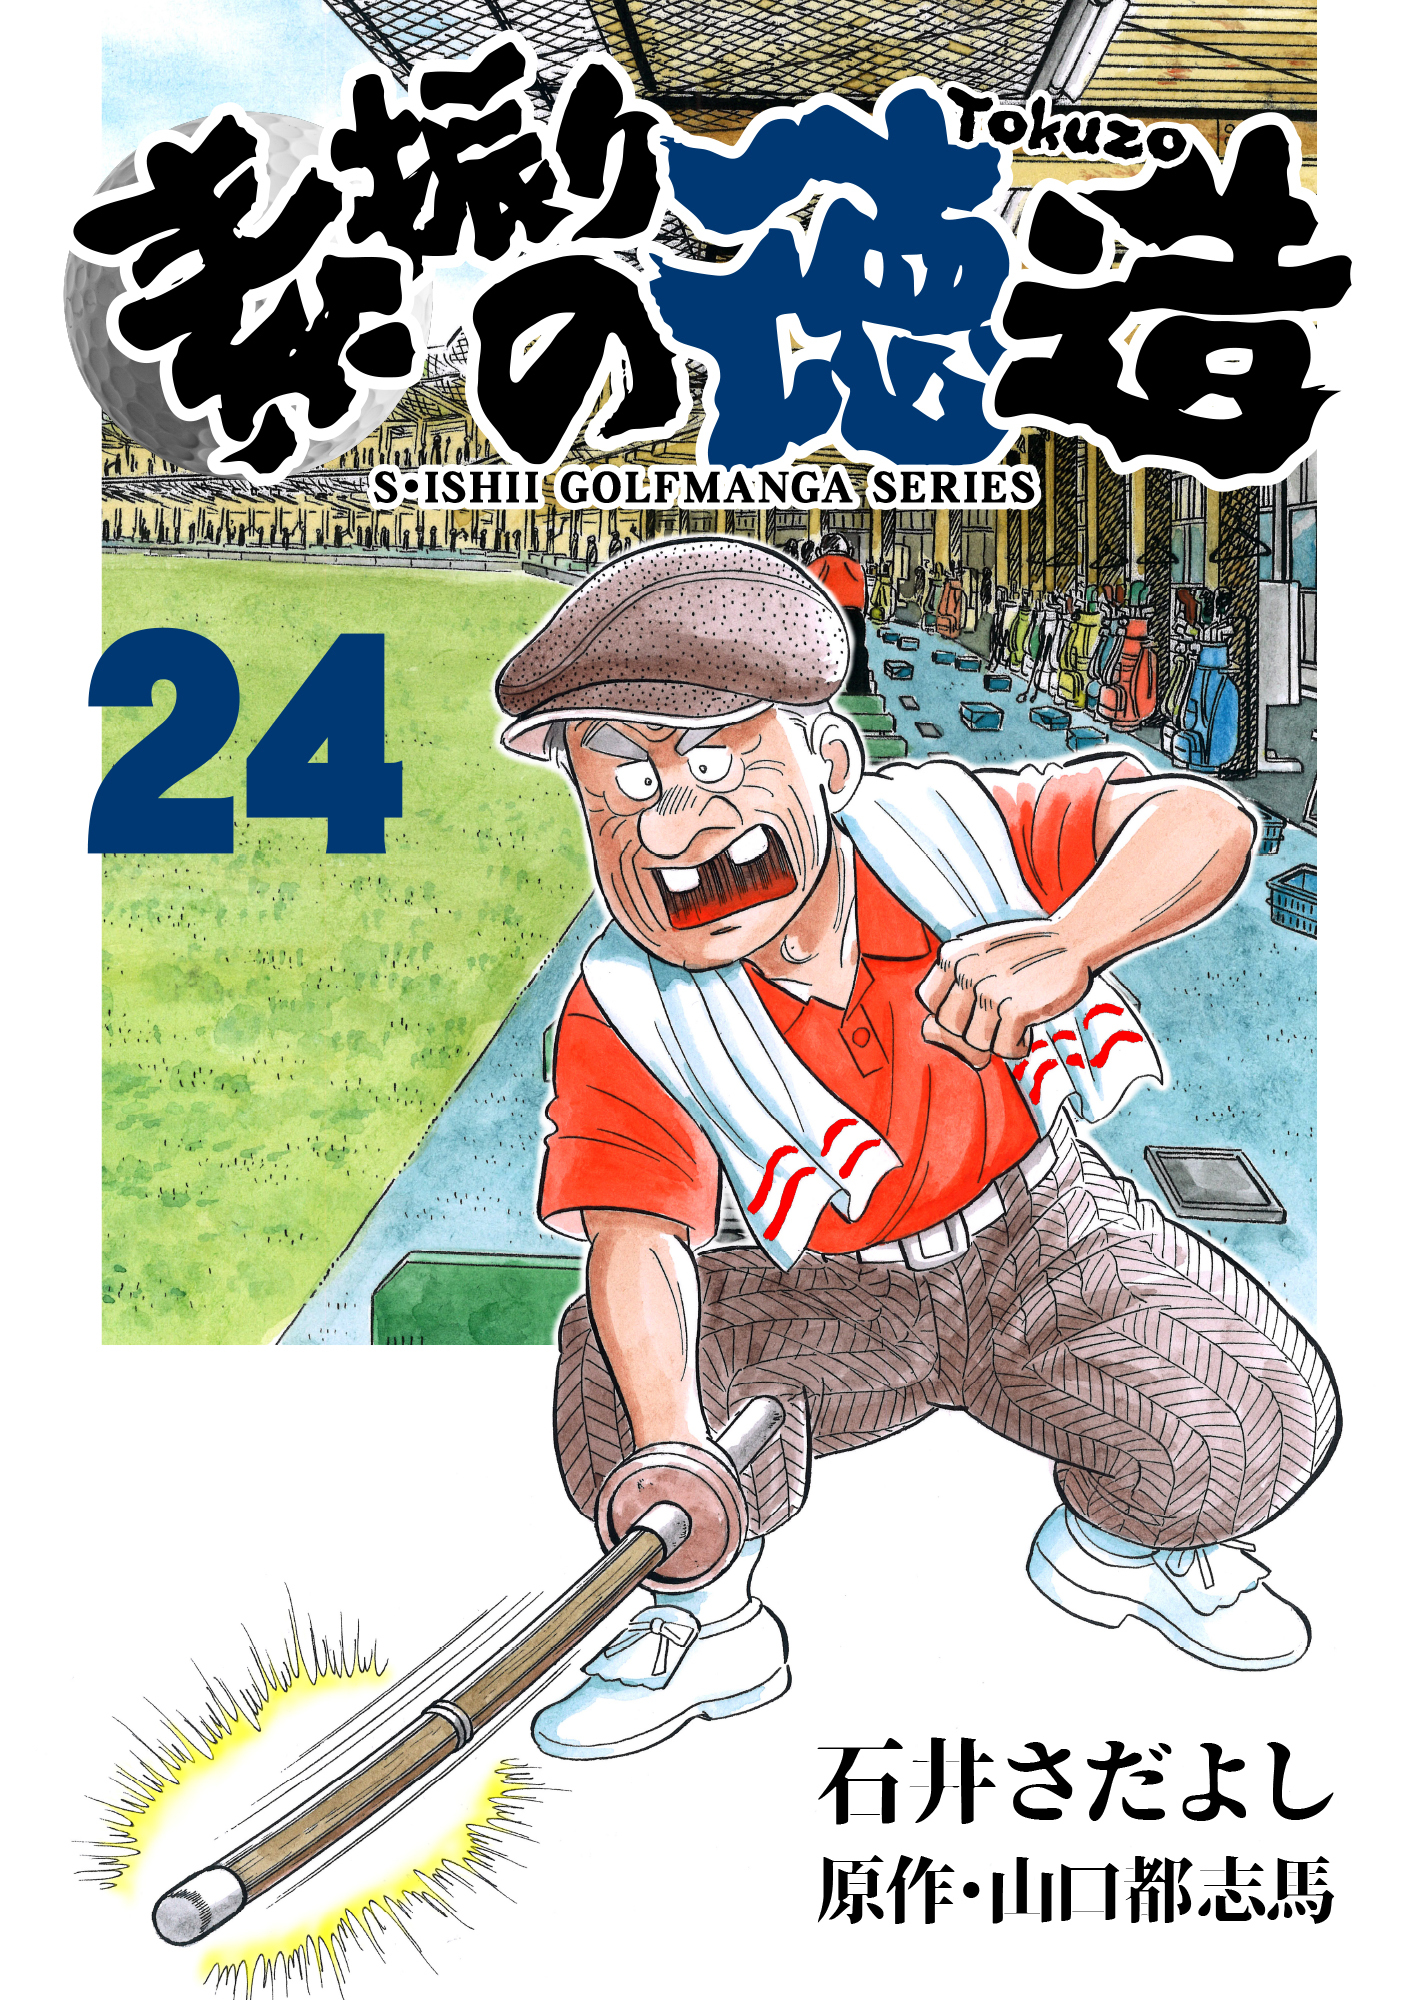 石井さだよしゴルフ漫画シリーズ 素振りの徳造 24巻 無料 試し読みなら Amebaマンガ 旧 読書のお時間です